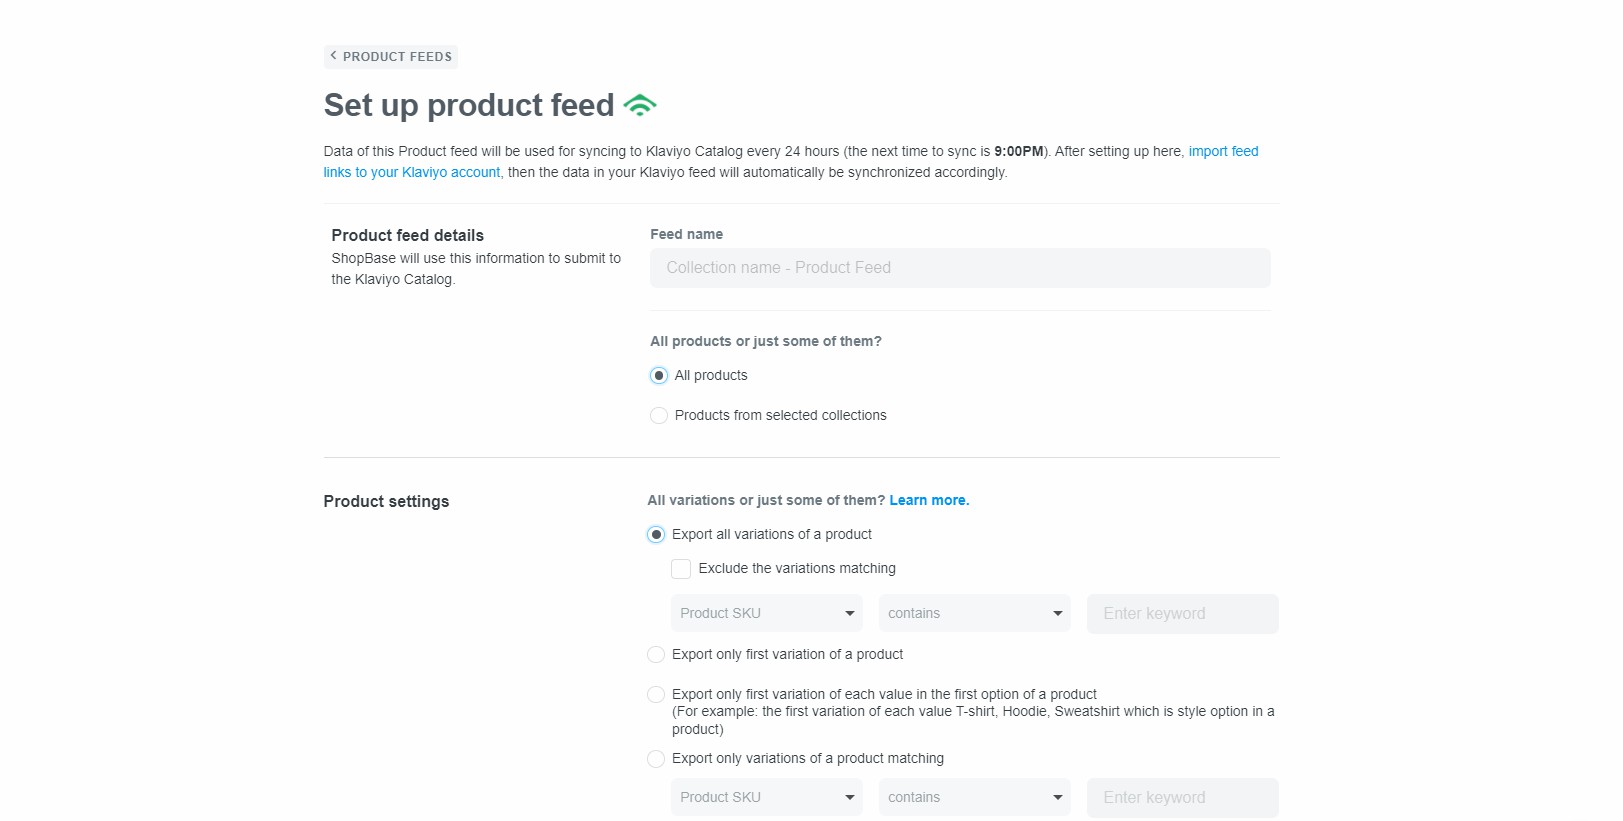 ShopBase sẽ sử dụng các thông tin bạn điền trong mục Product feed detail để gửi đến Klaviyo Catalog.